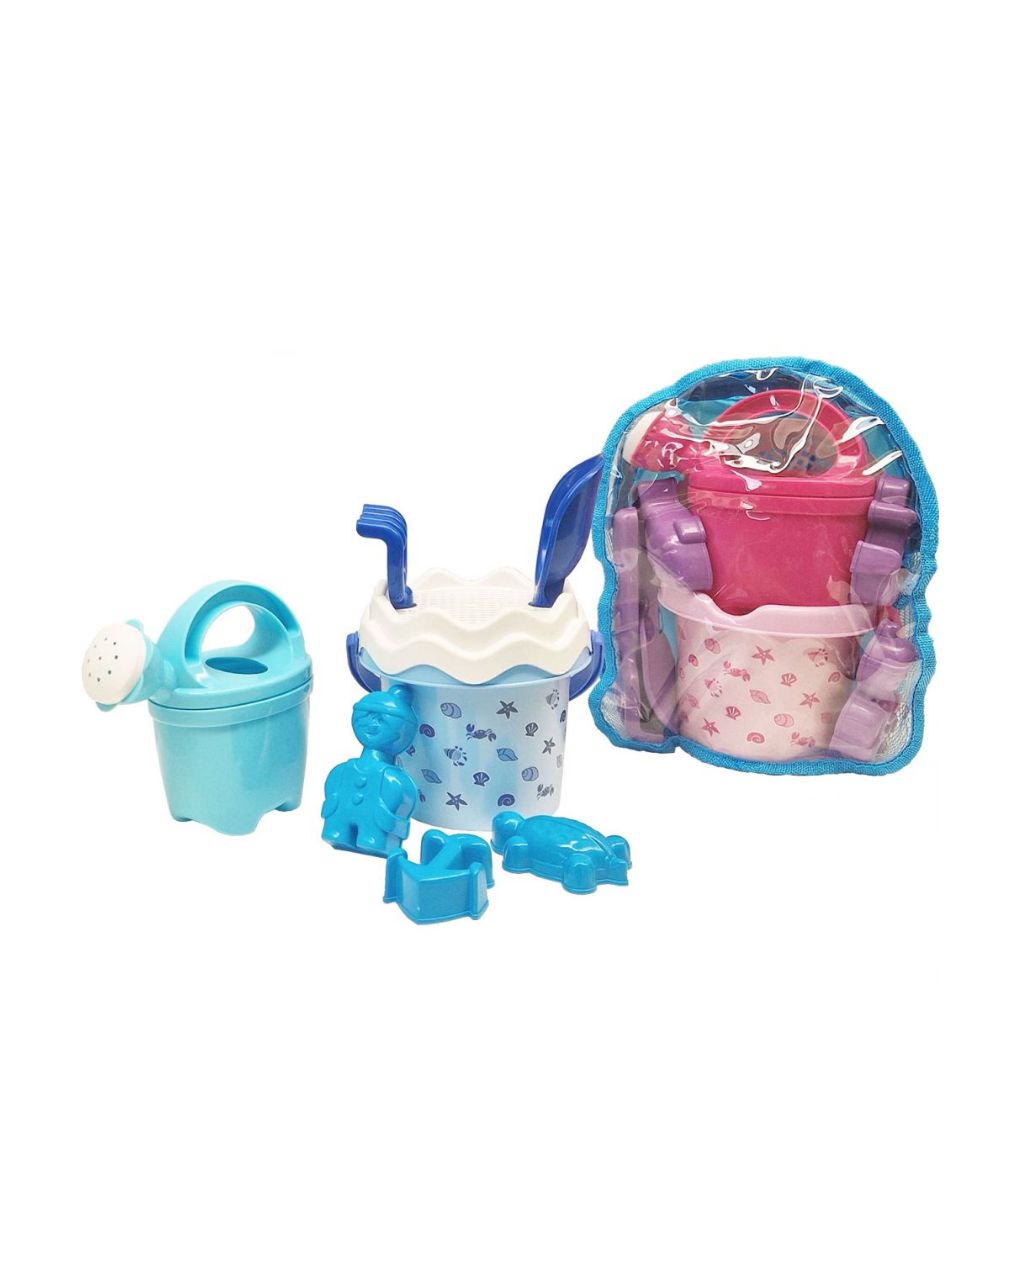 Androni giocattoli - σετ σακίδιο πλάτης με κοχύλι θαλάσσης - αίθουσες παιχνιδιών σε 2 χρώματα